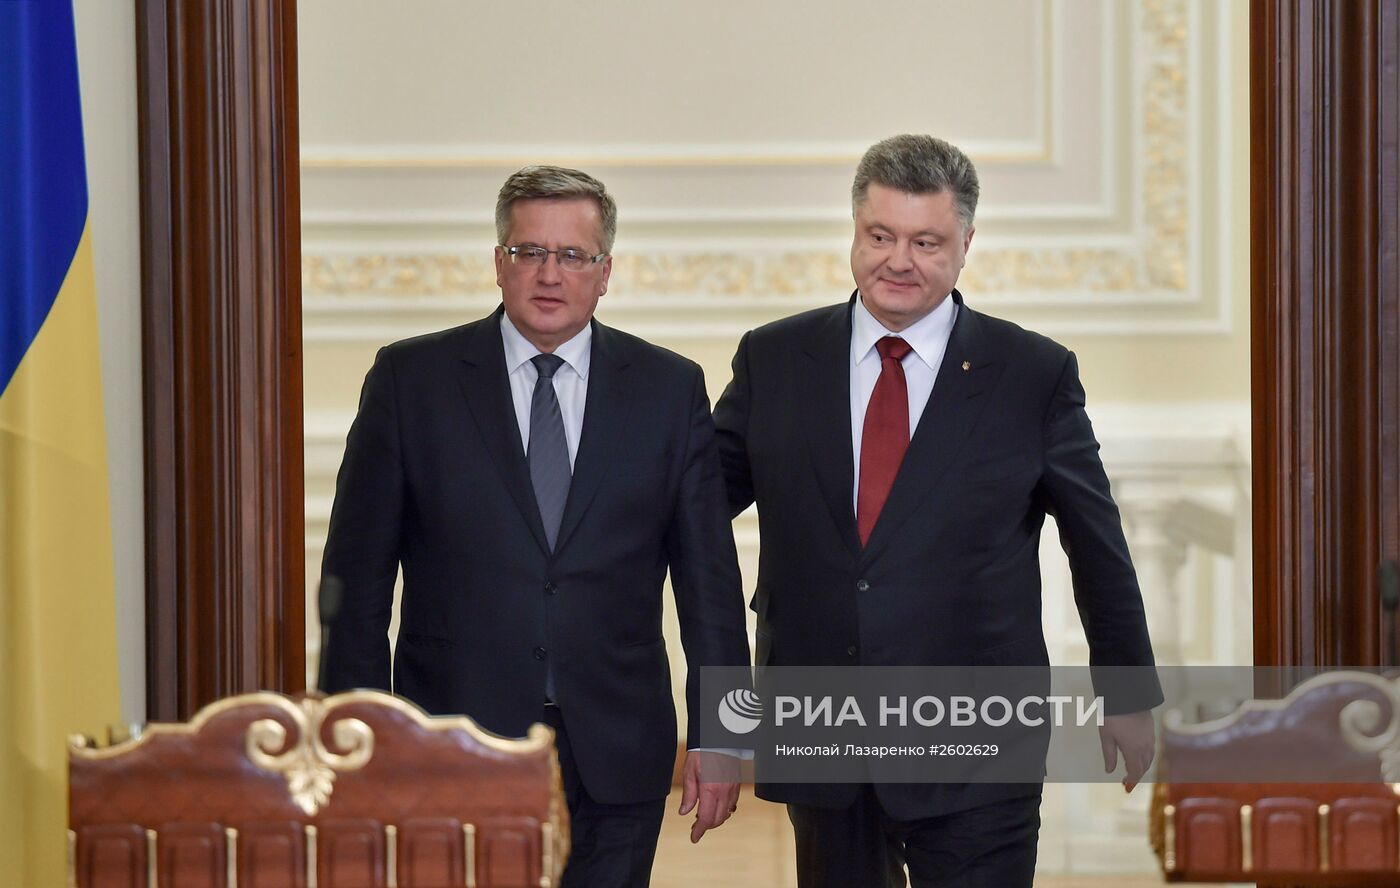 Встреча президента Украины П.Порошенко и президента Польши Б.Коморовского